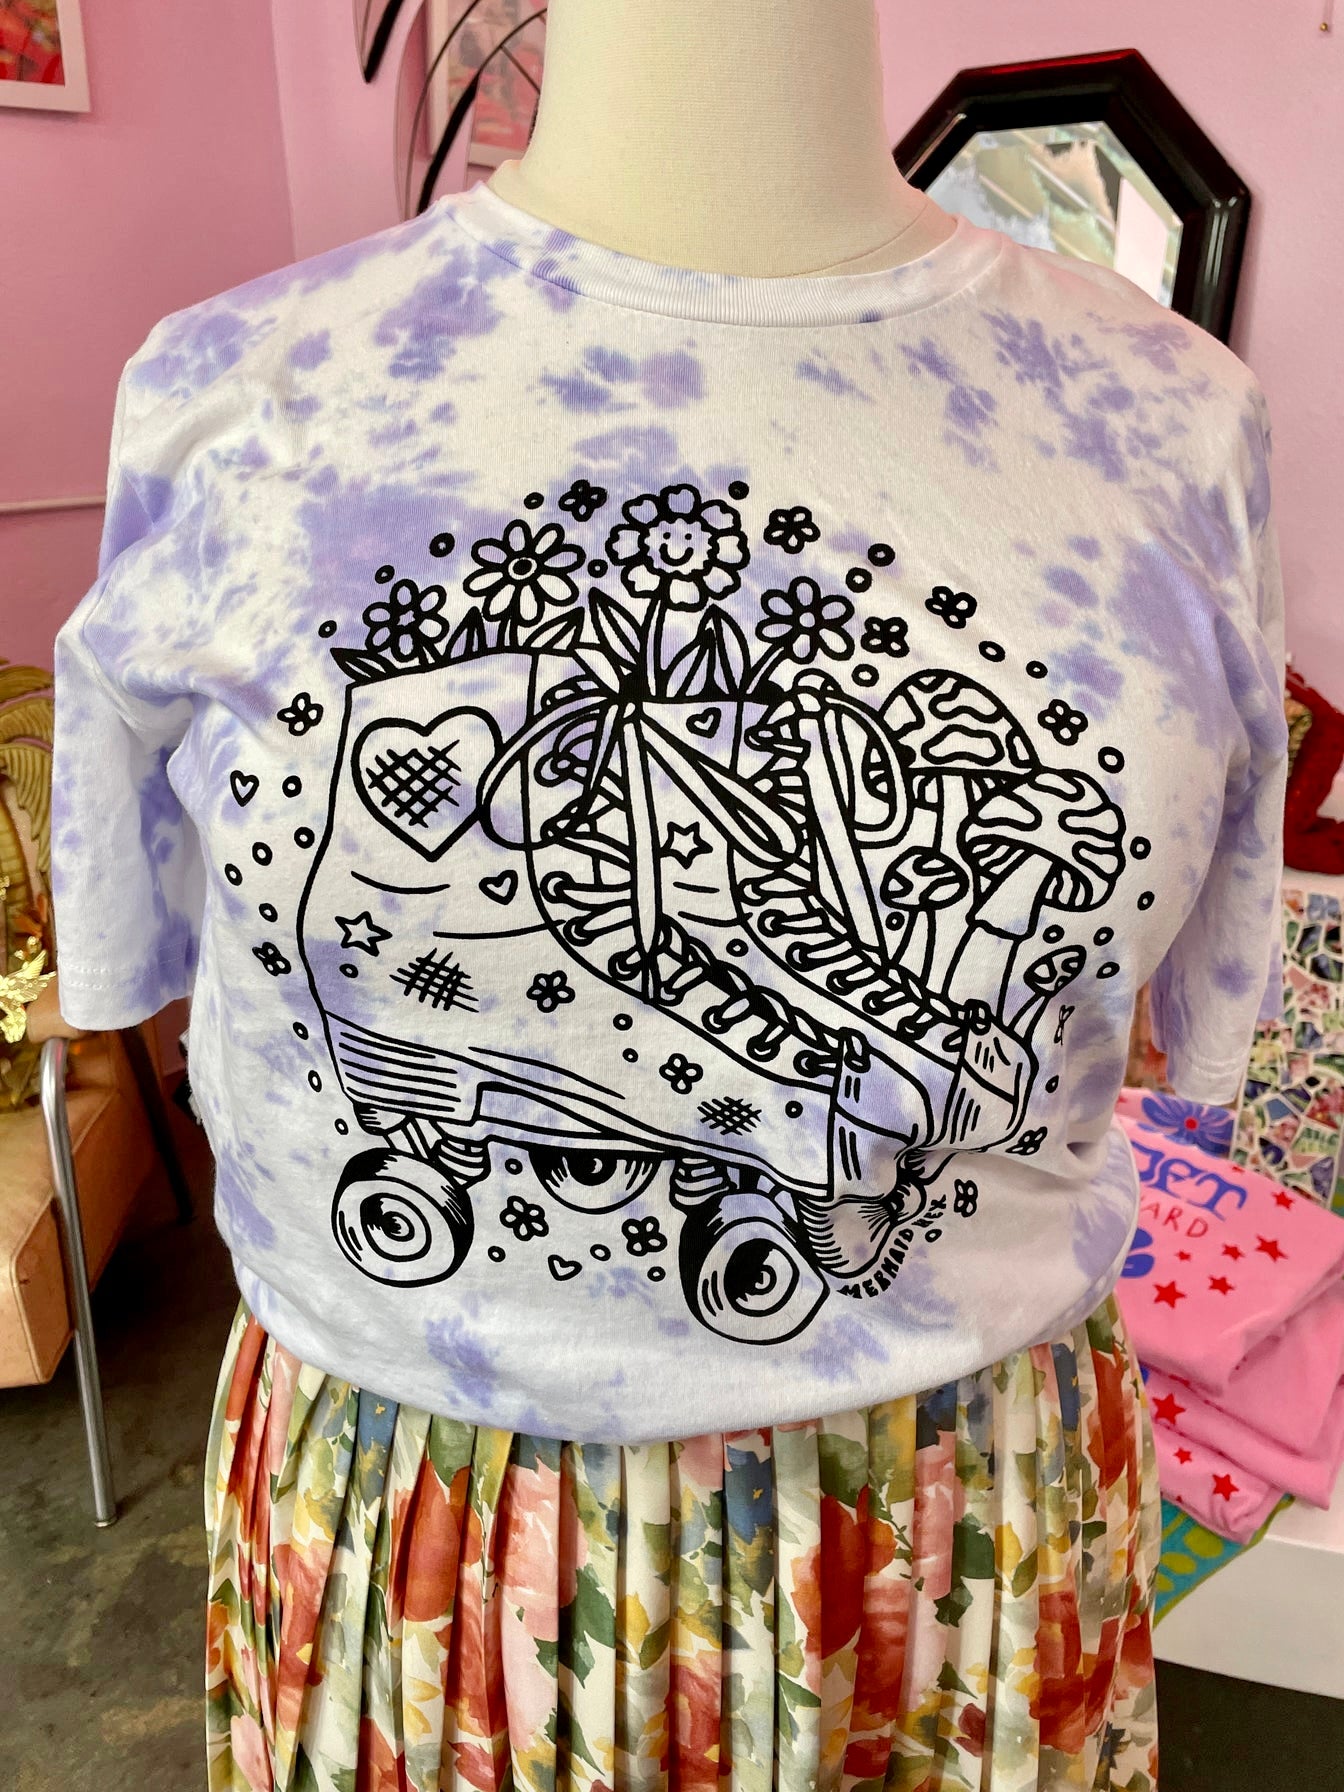 Purple Tye Dye Rollerskate Print T-Shirt from Mermaid Hex